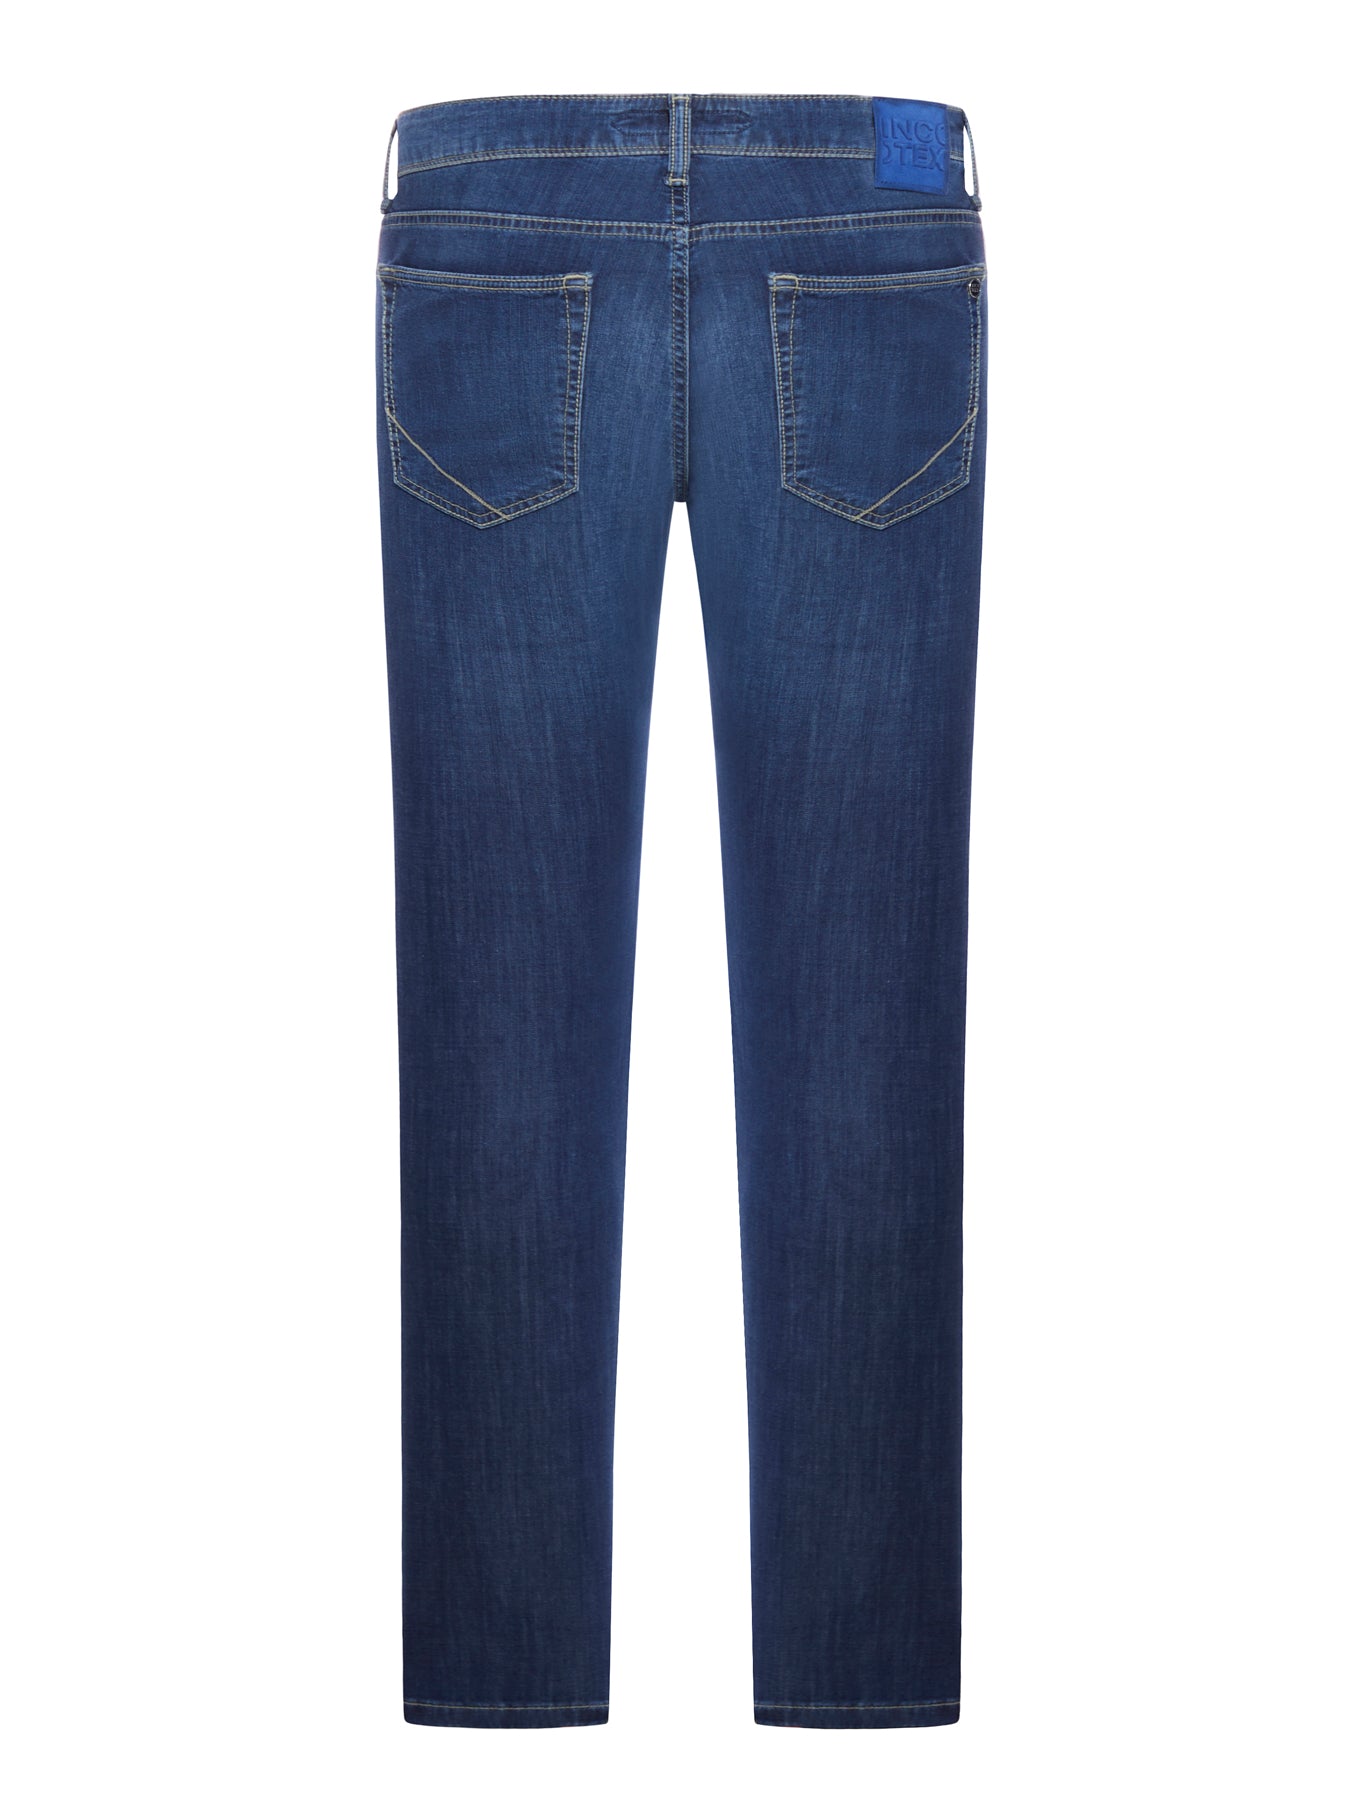 jeans slim in cotone stretch